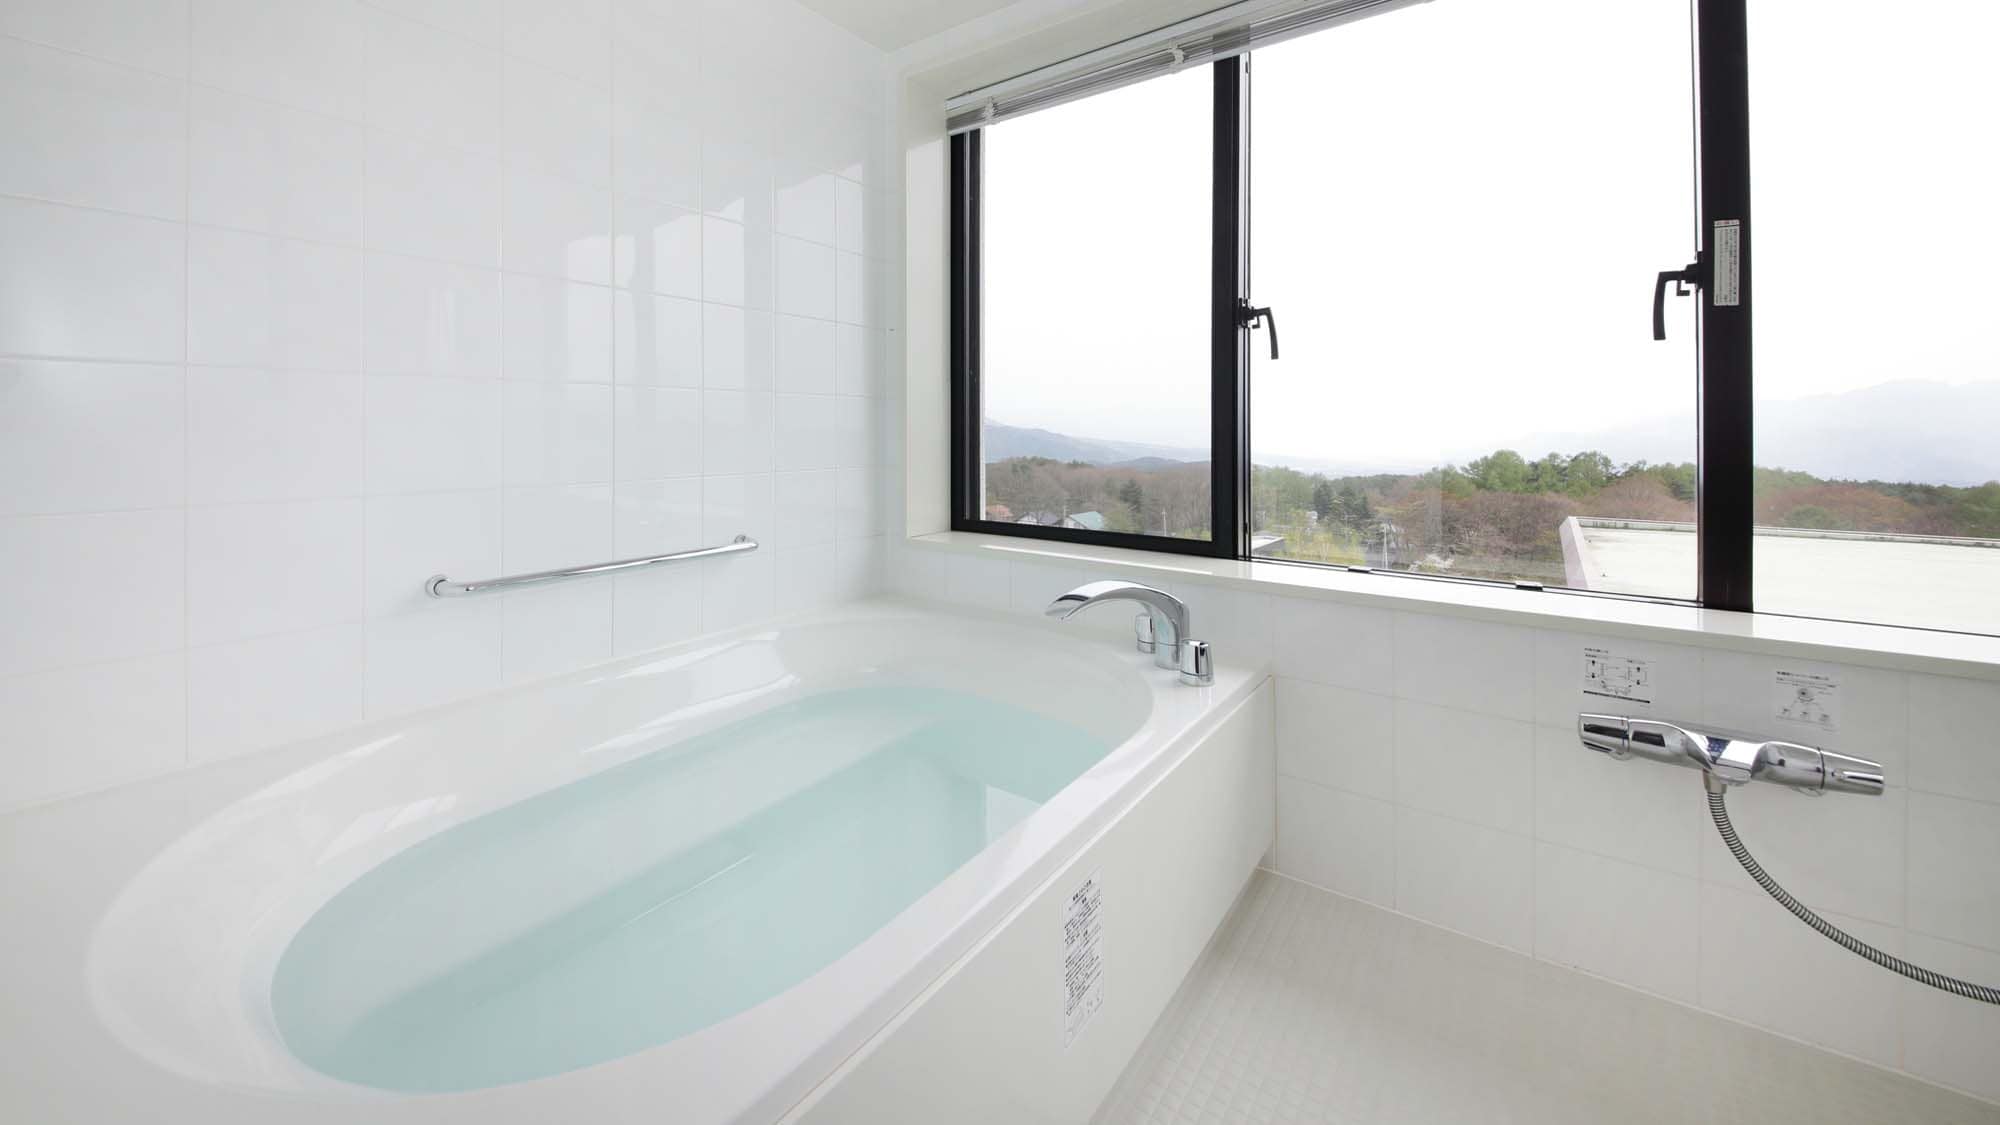 【景觀浴雙床房】唯一的浴池可眺望南阿爾卑斯山脈的景觀浴雙床房